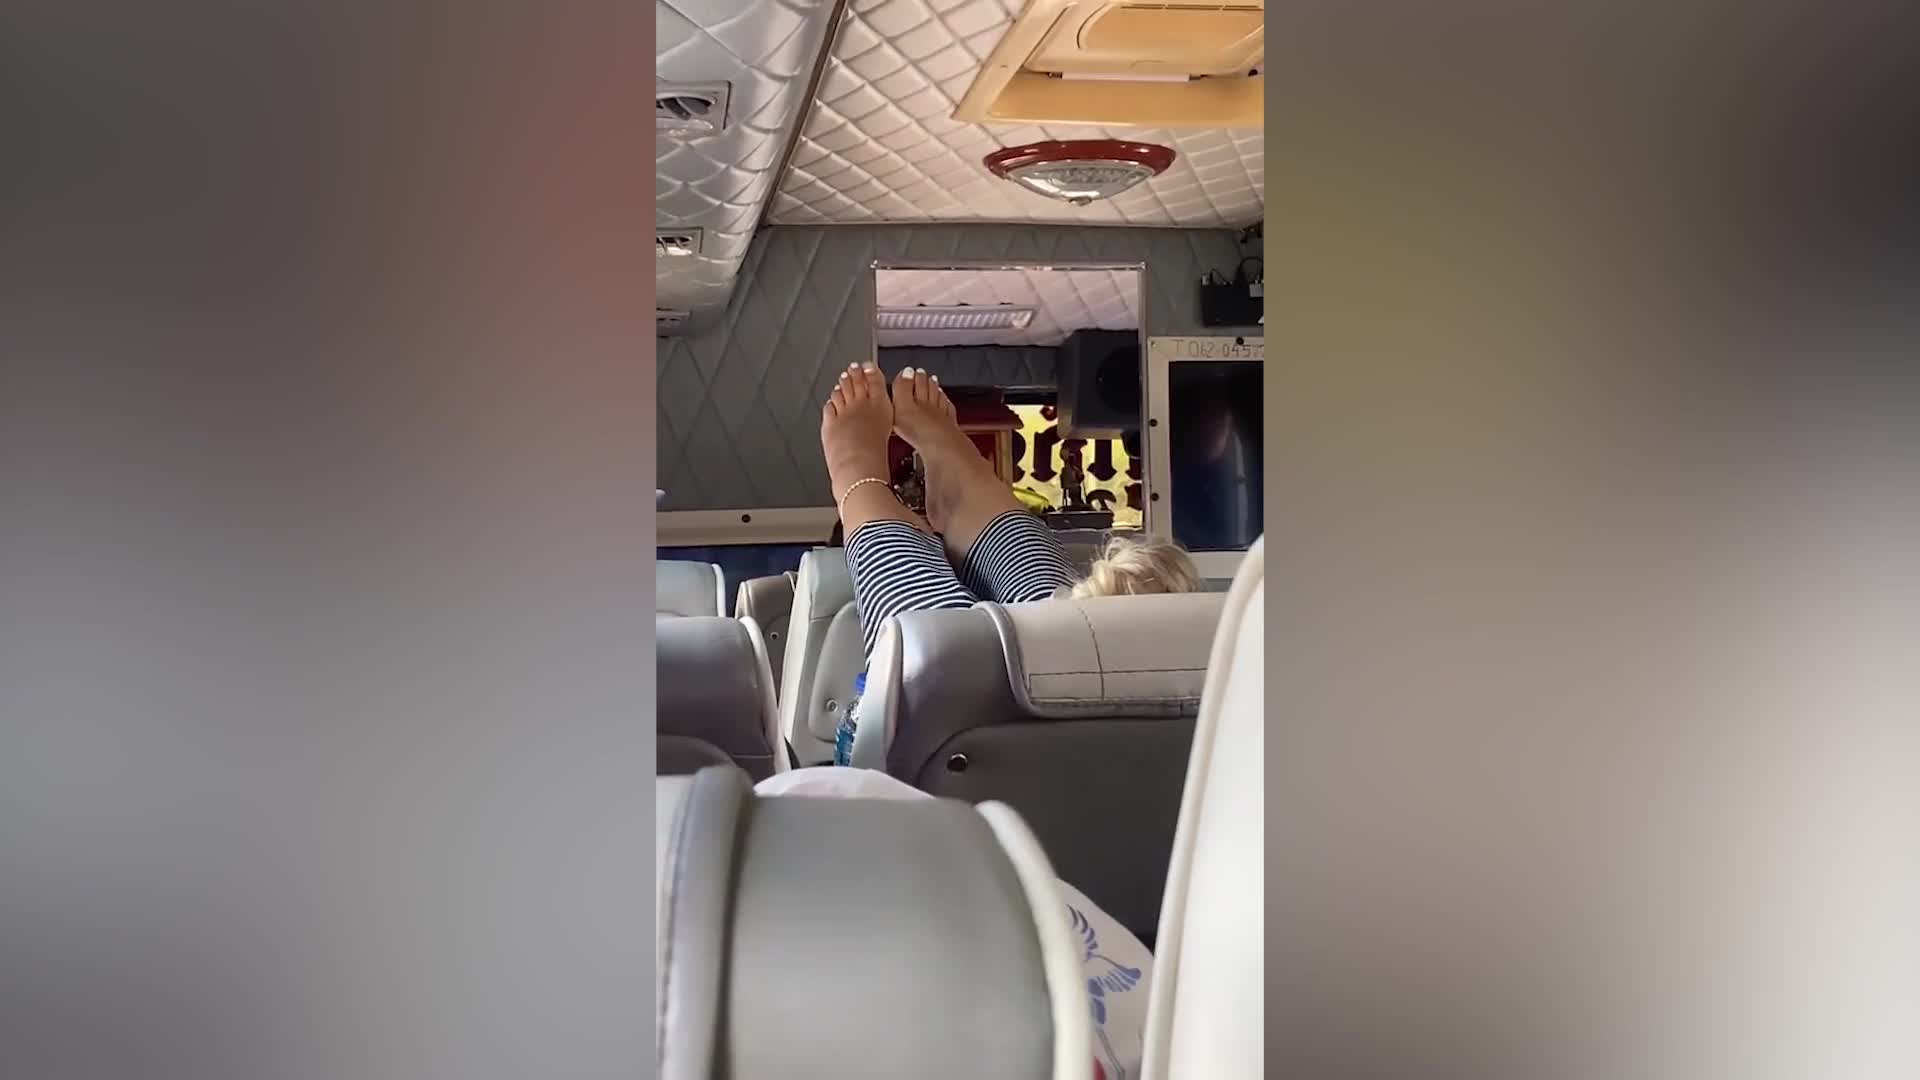 Video - Nữ du khách có hành động xấu xí trên máy bay khiến người xem bức xúc